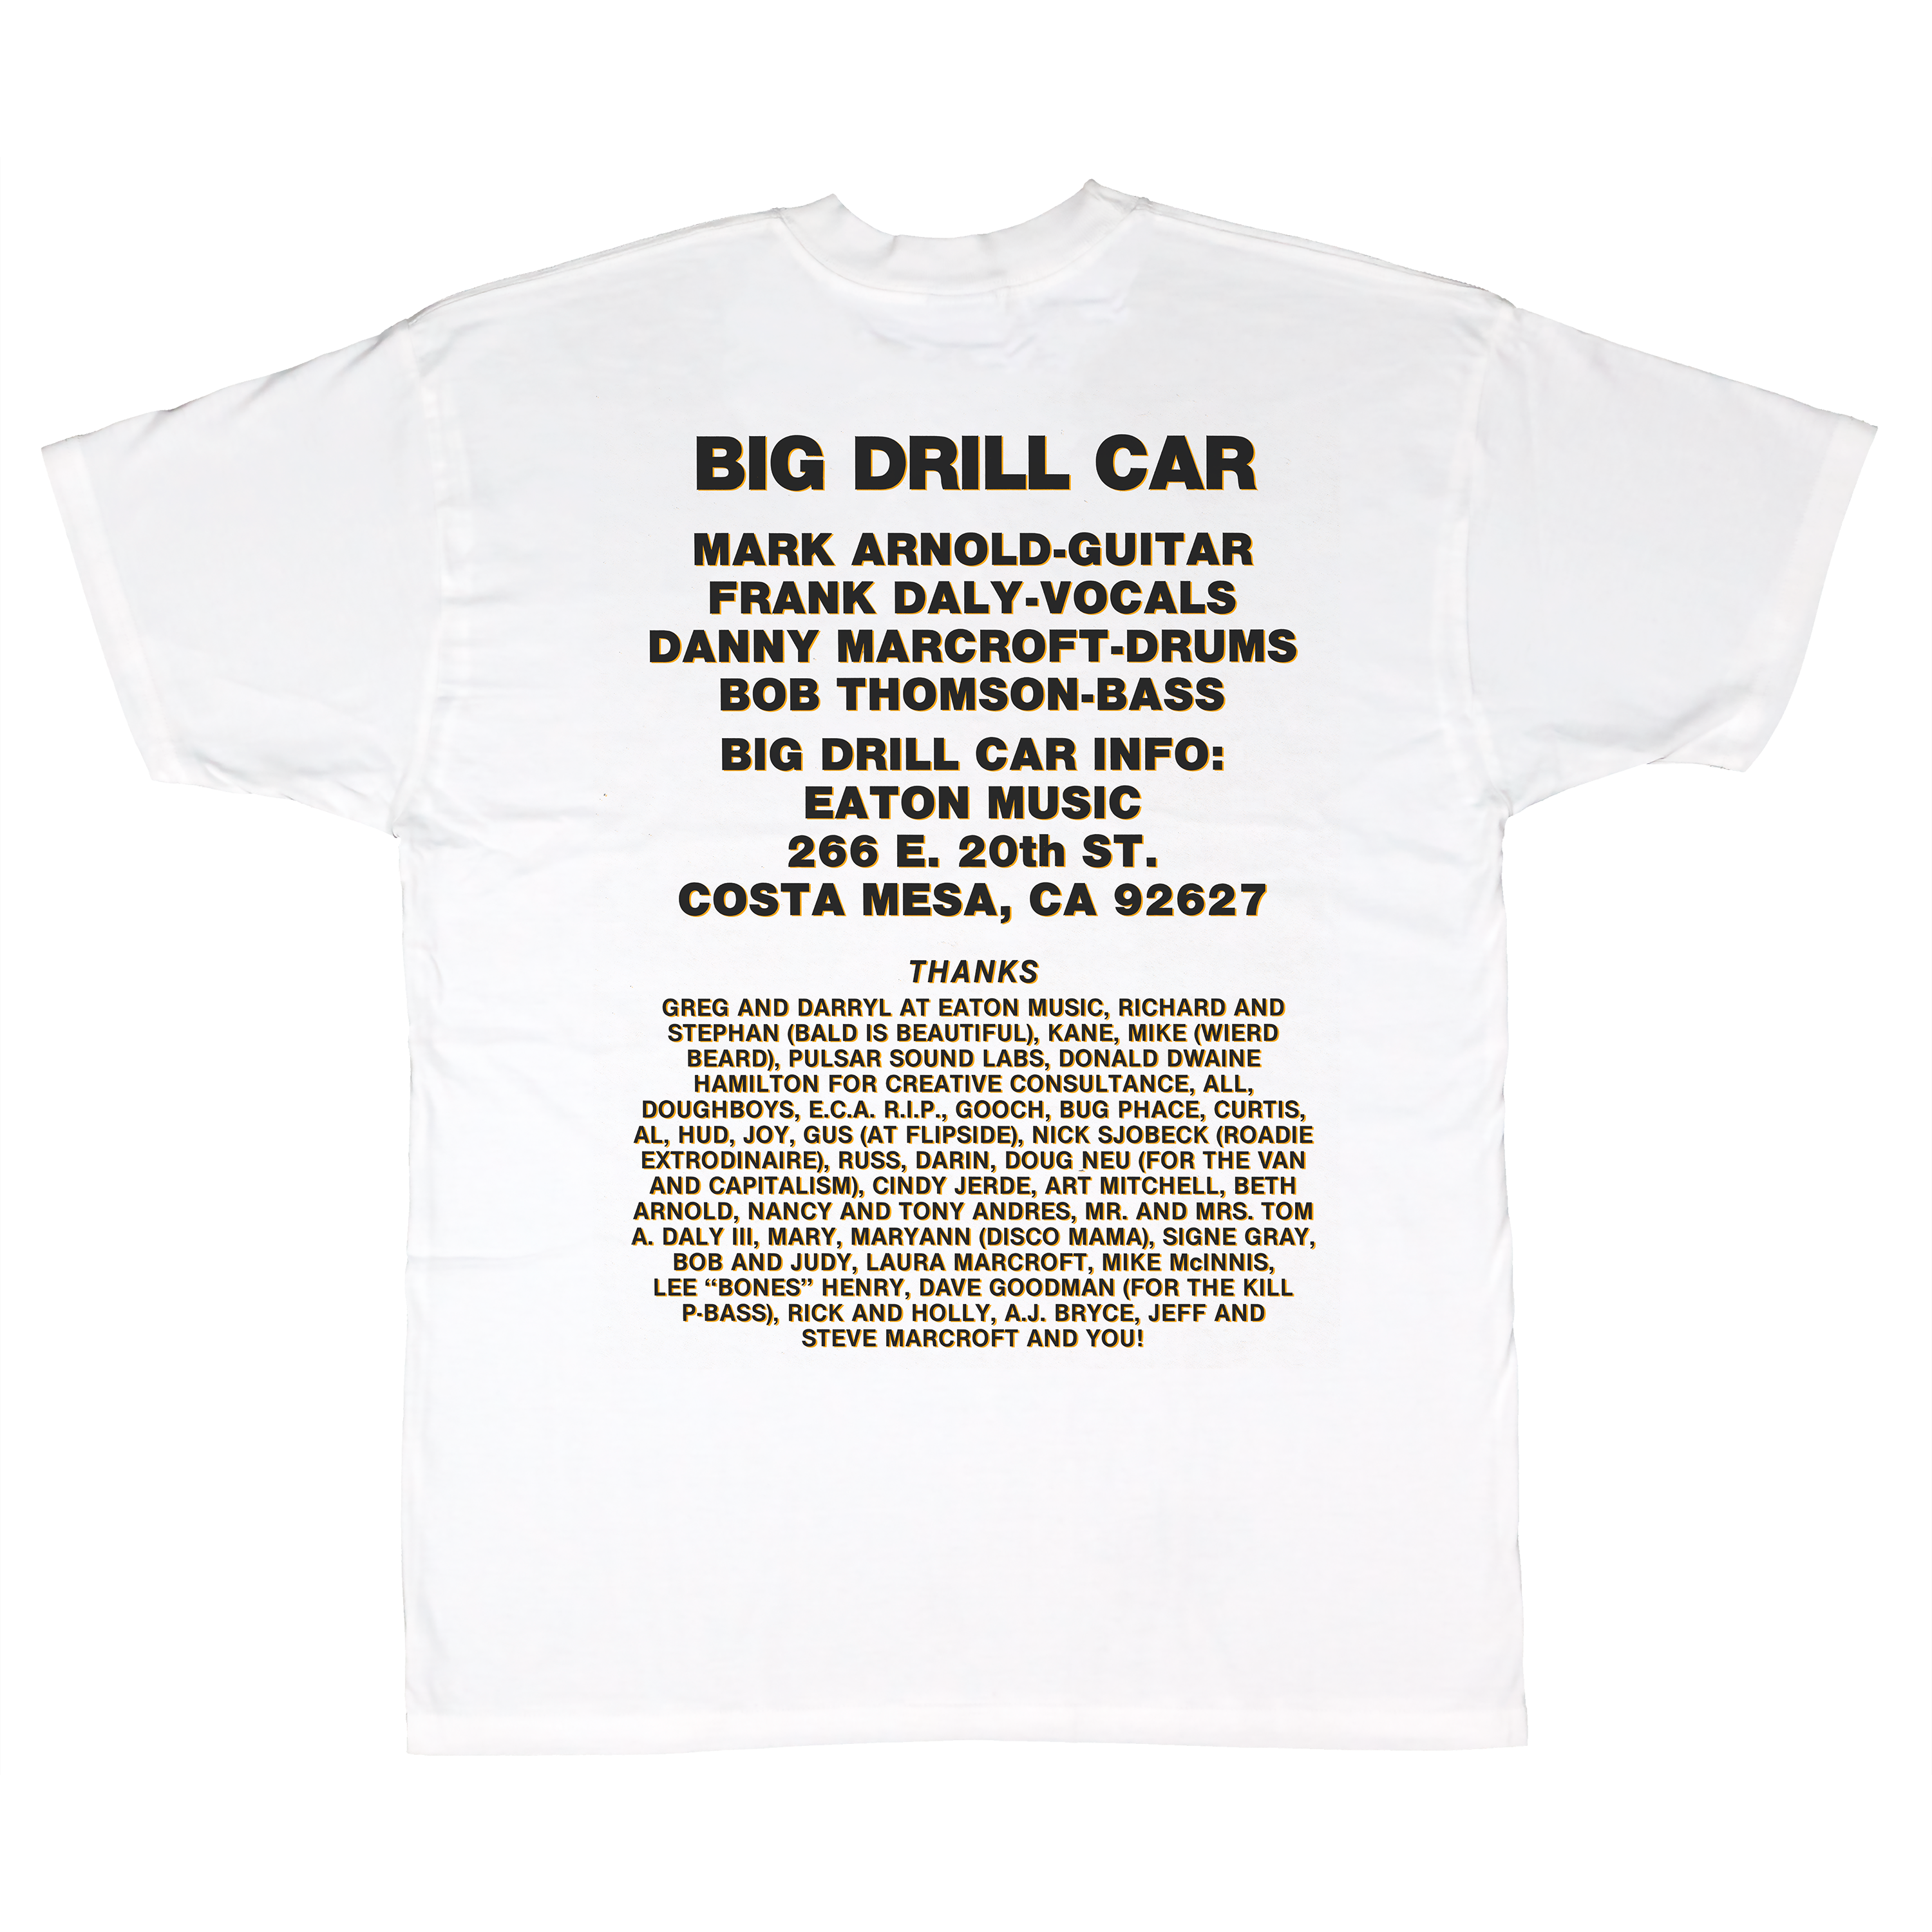 Big Drill Car X Minor Thread LTD - Small Block 35th Anniversary Shirt